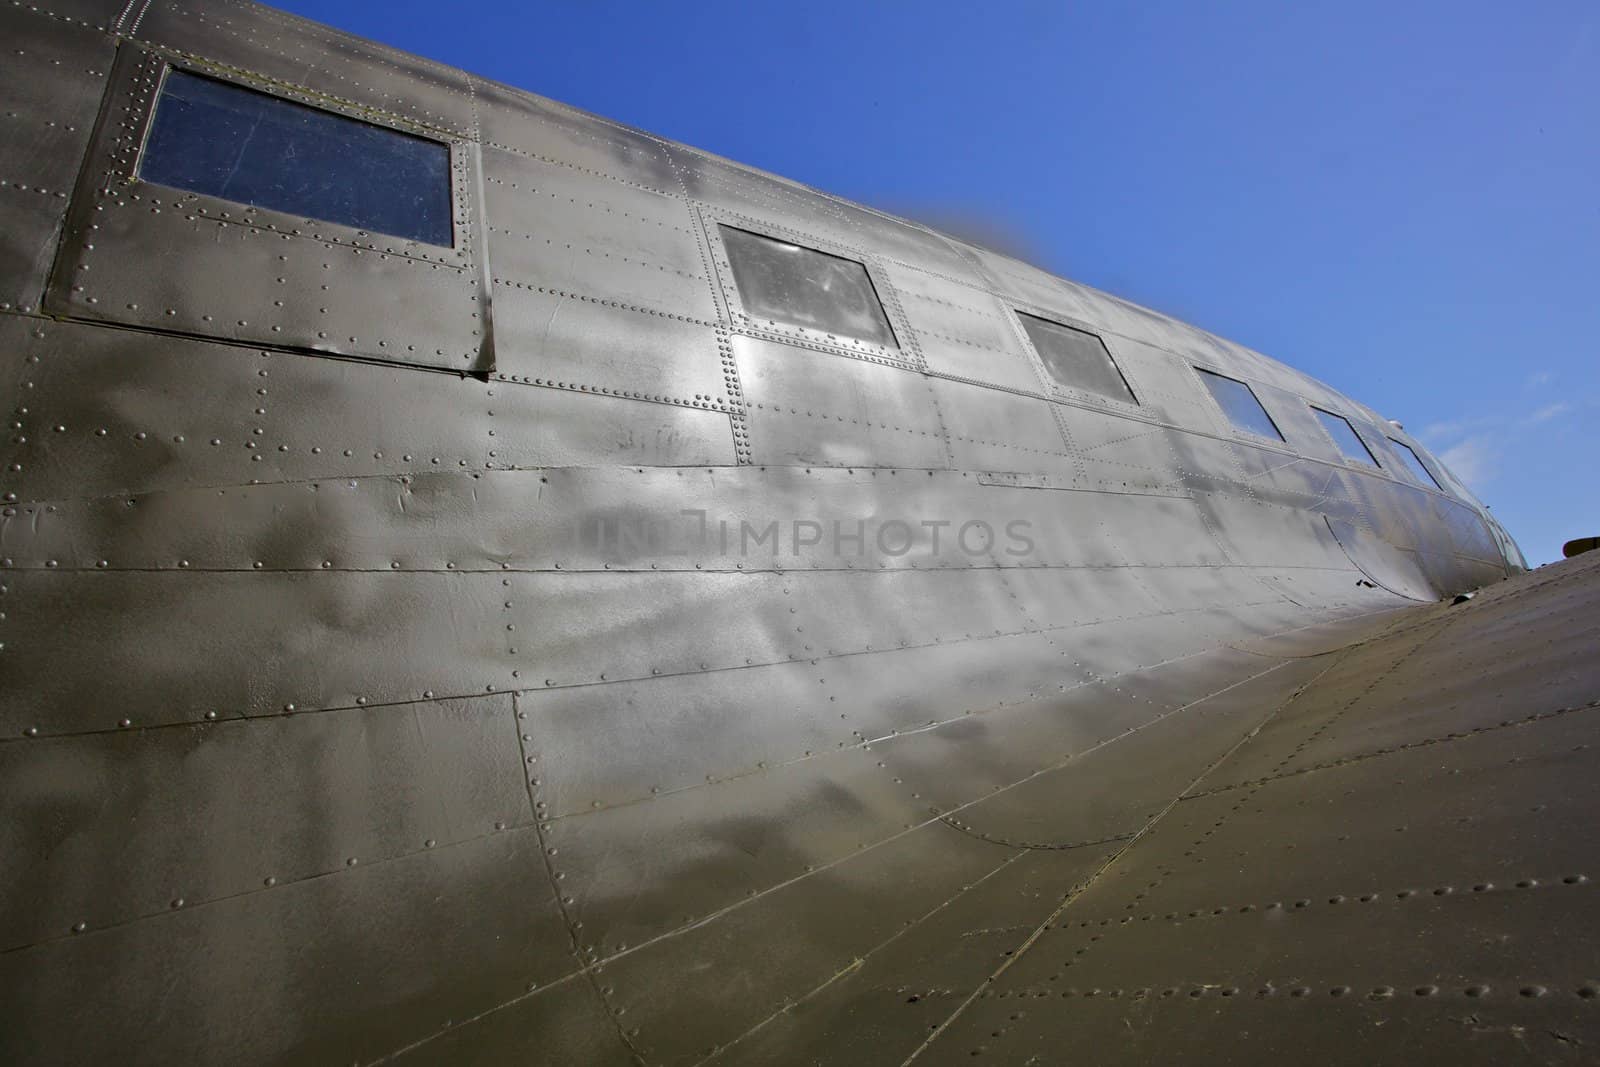 C-47 Contours by bobkeenan